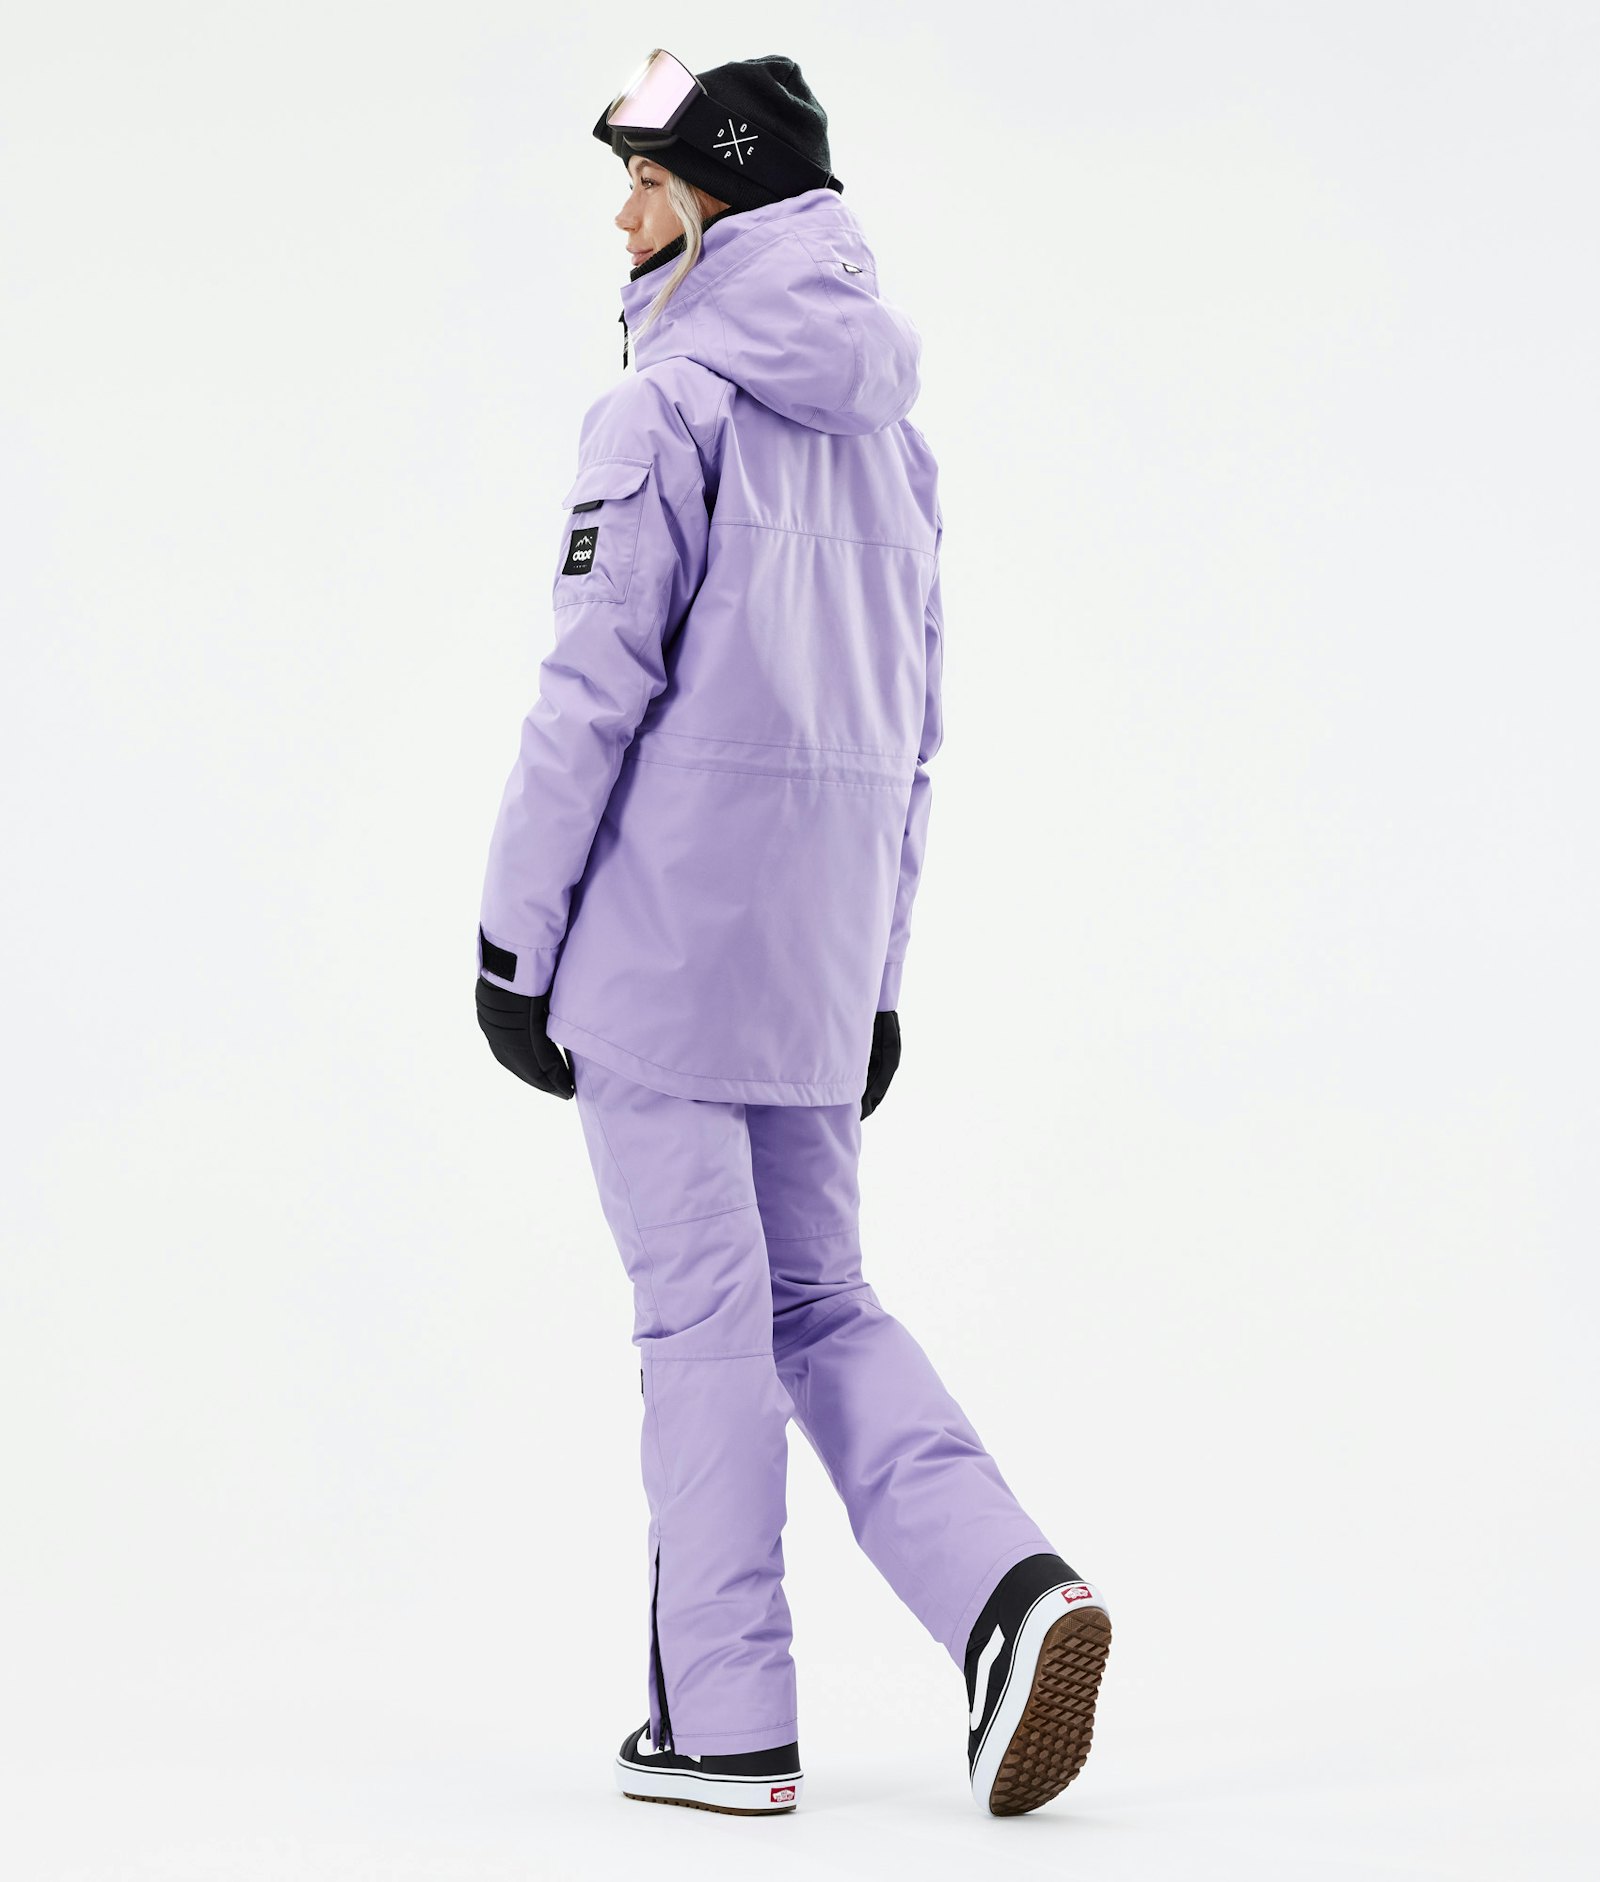 Dope Akin W 2021 Snowboardjacke Damen Faded Violet